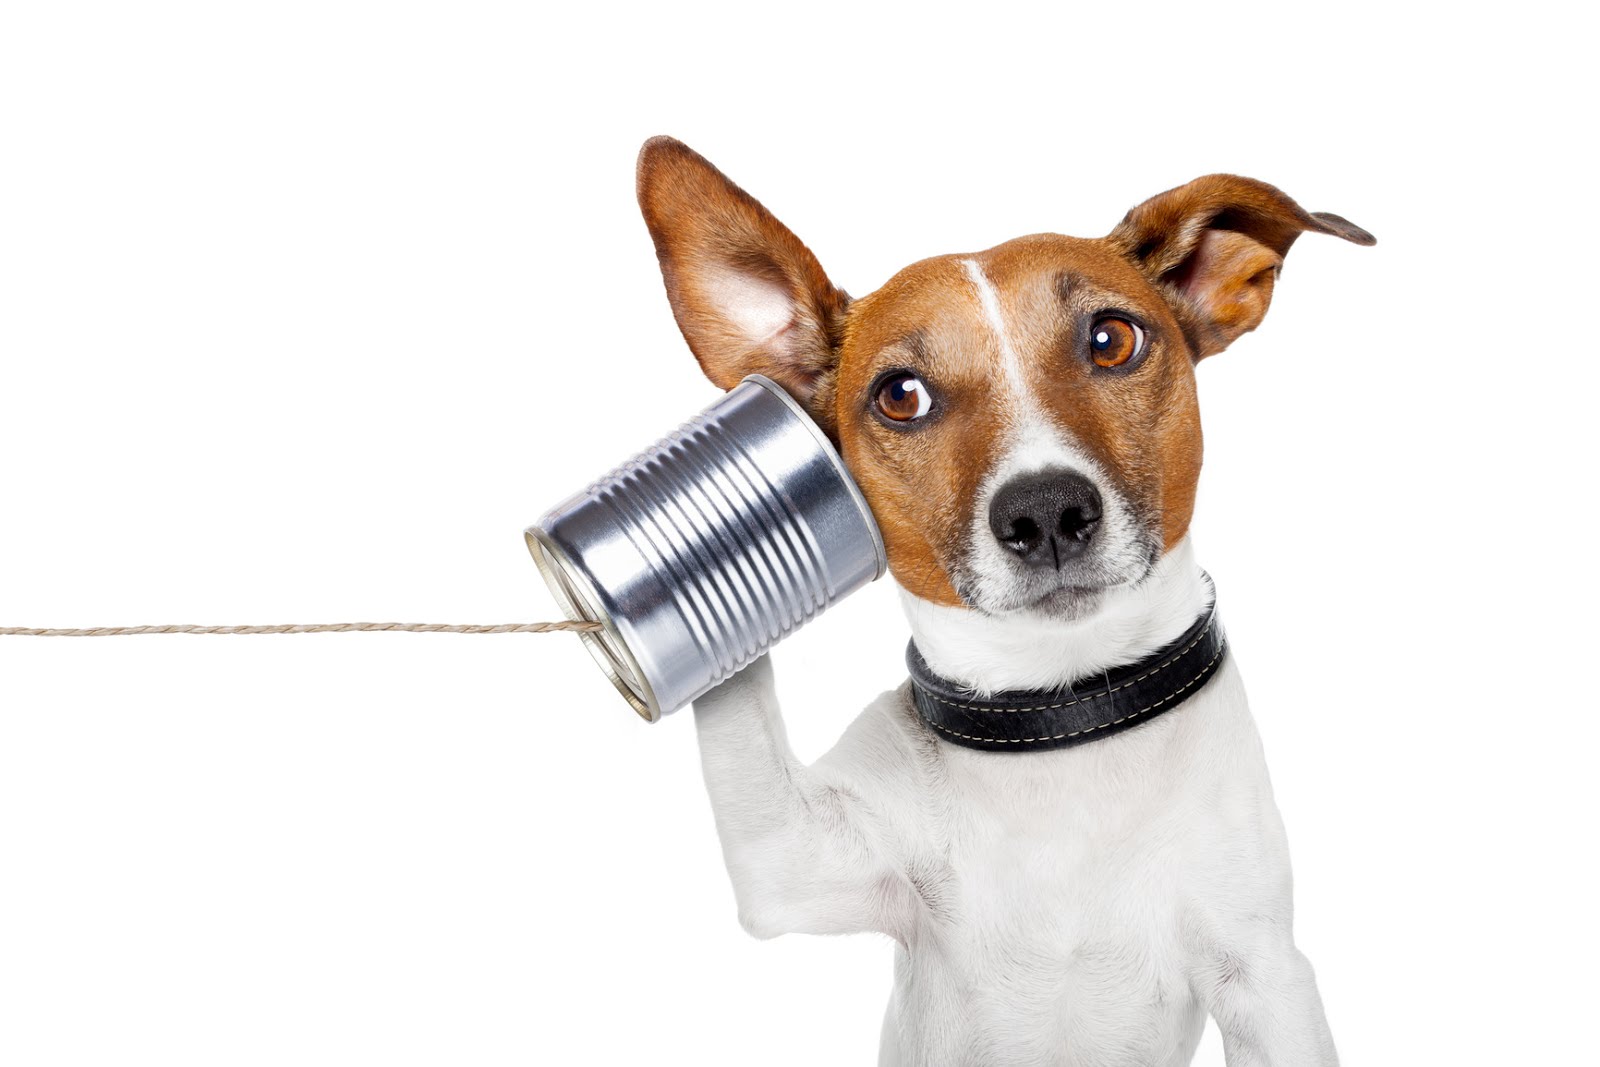 Animal Communication - The Basics